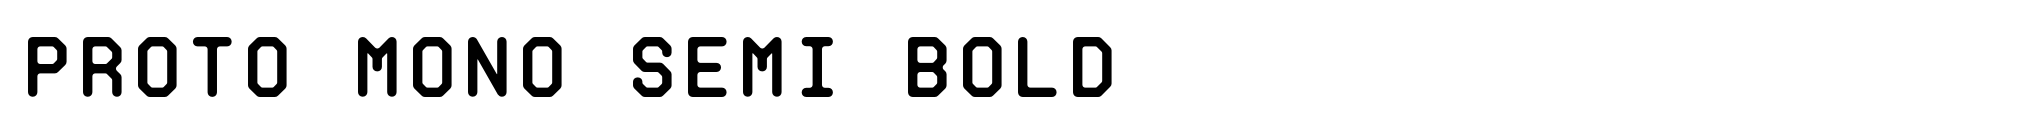 Proto Mono Semi Bold image